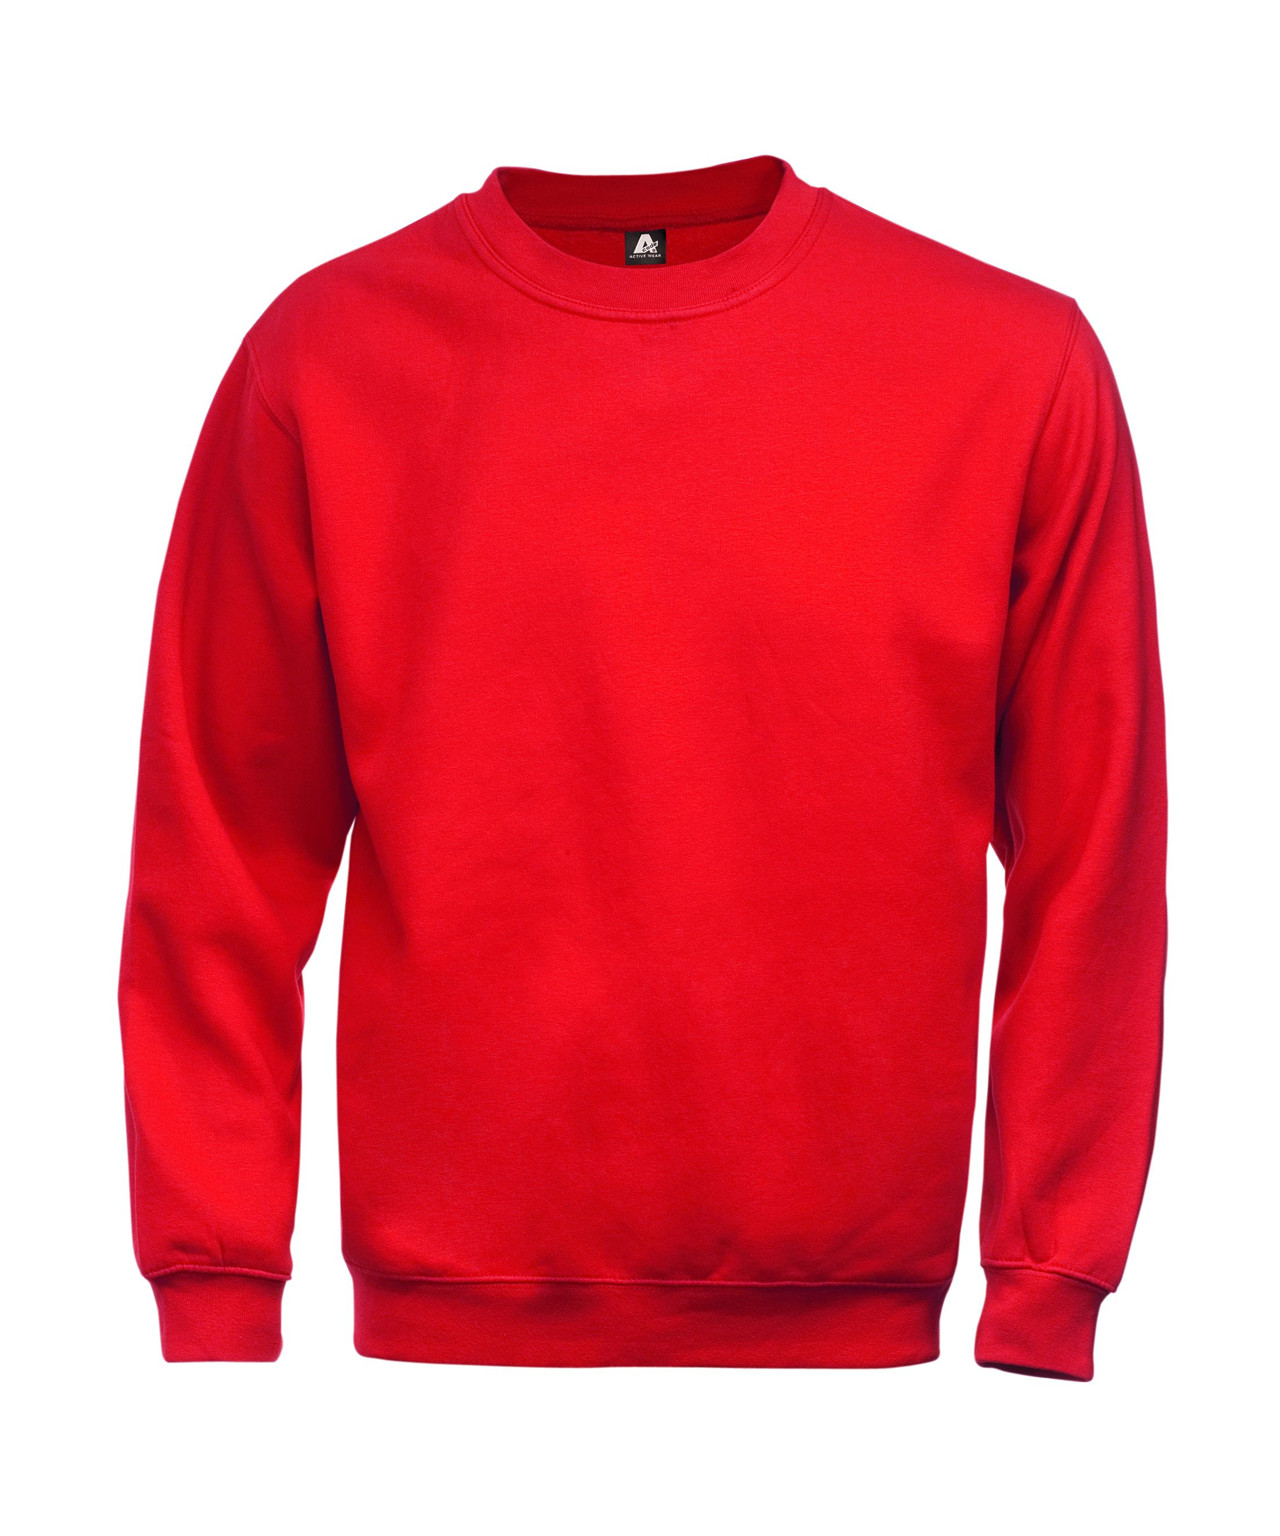 Billede af Kansas/Fristads A-Code klassisk sweatshirt (Rød, S)